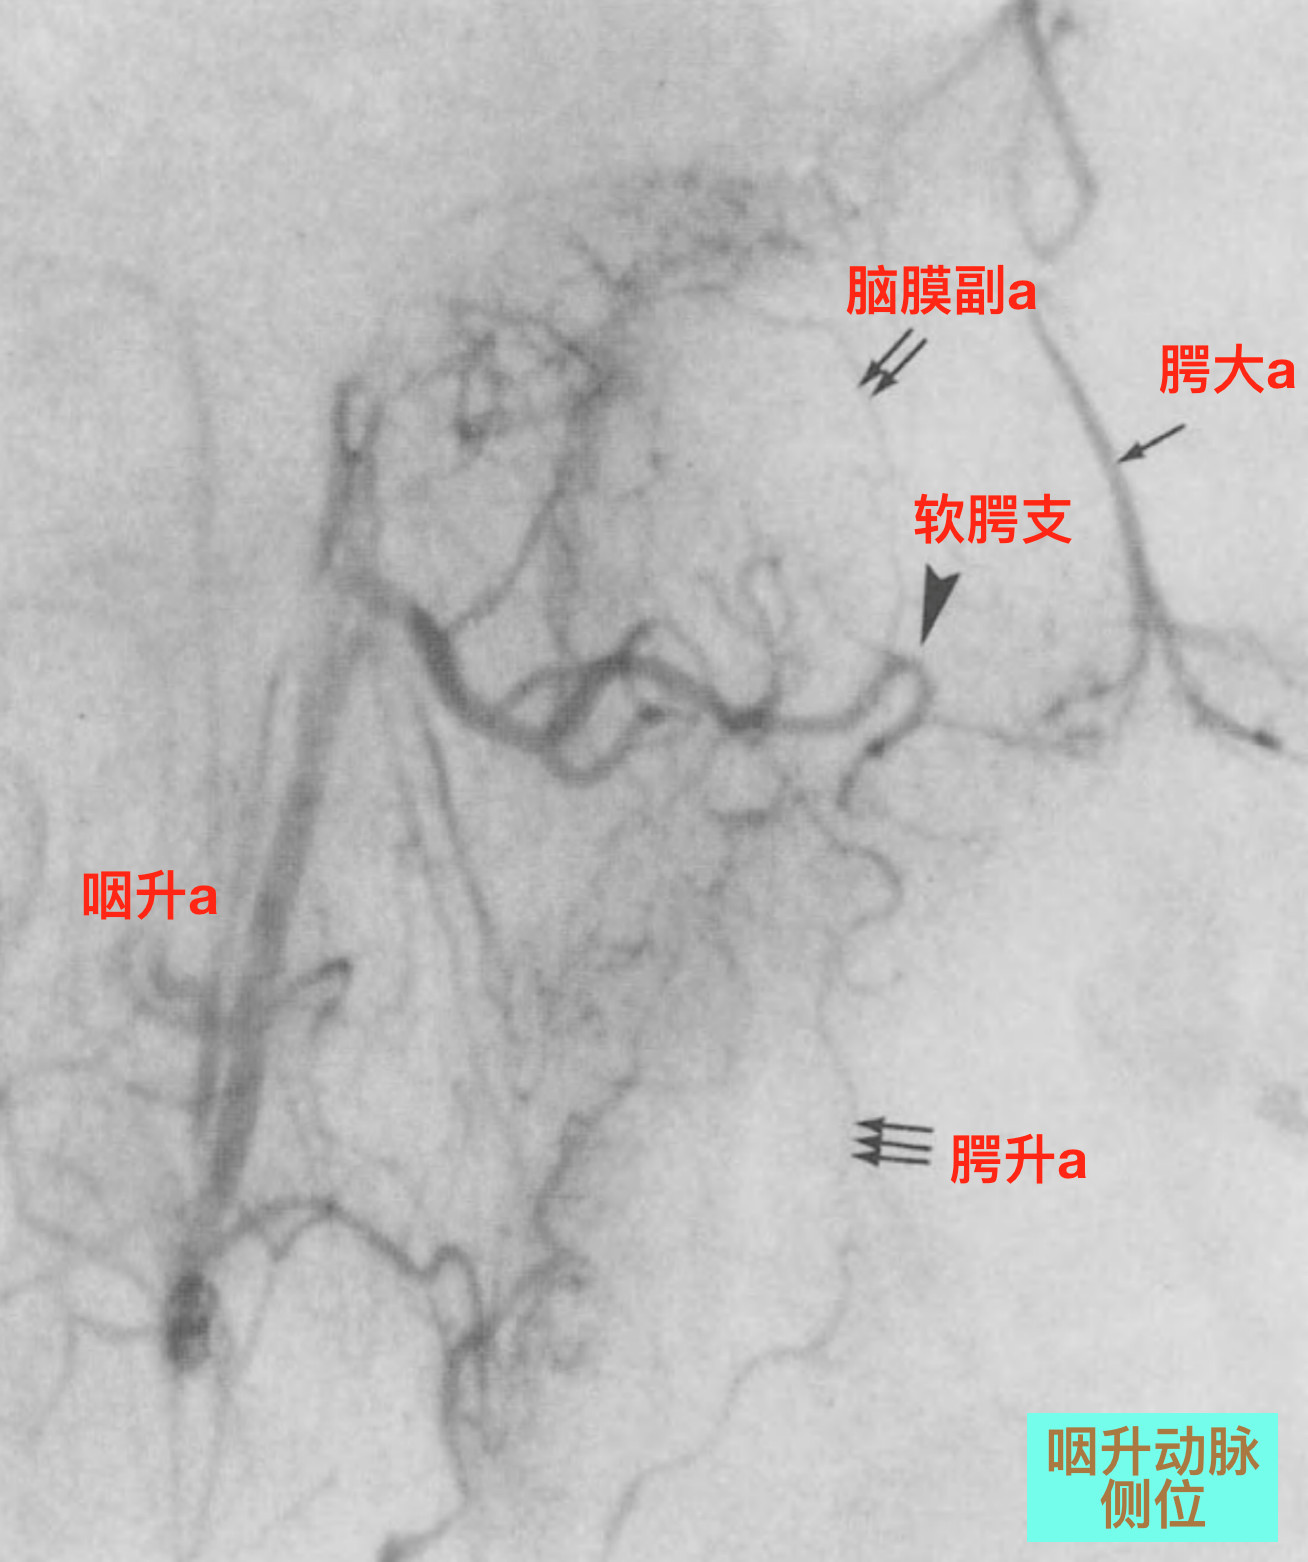 脑血管解剖学习笔记第19期面动脉颈部走行和分支